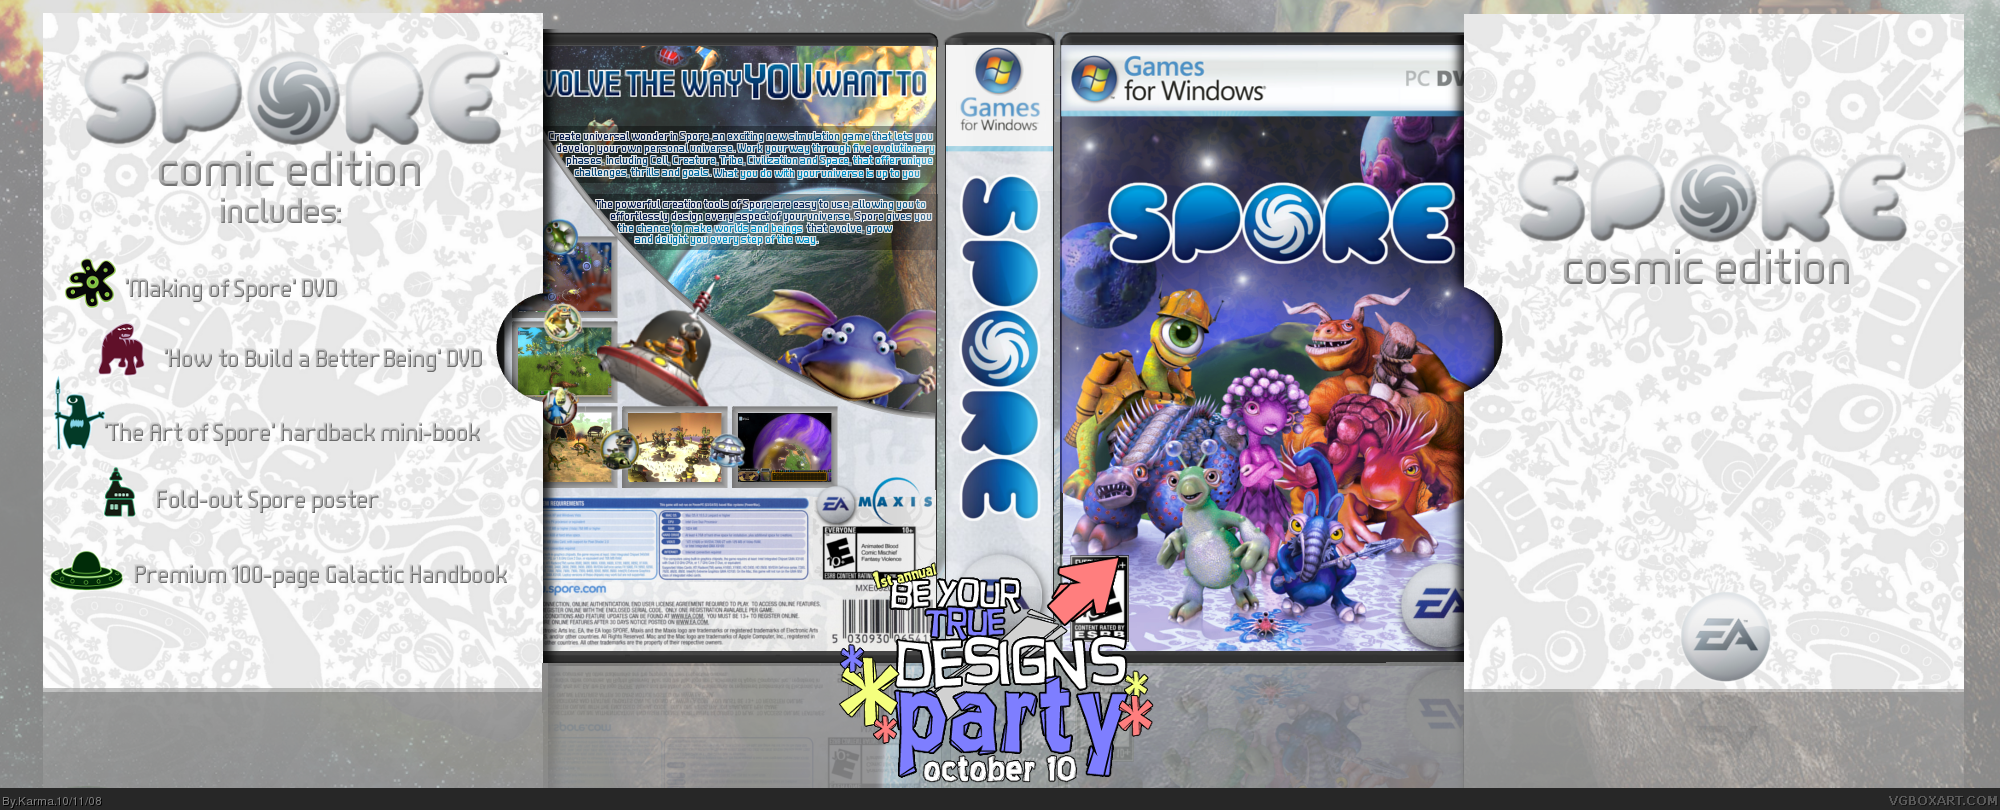 Spore: Cosmic Edition box cover